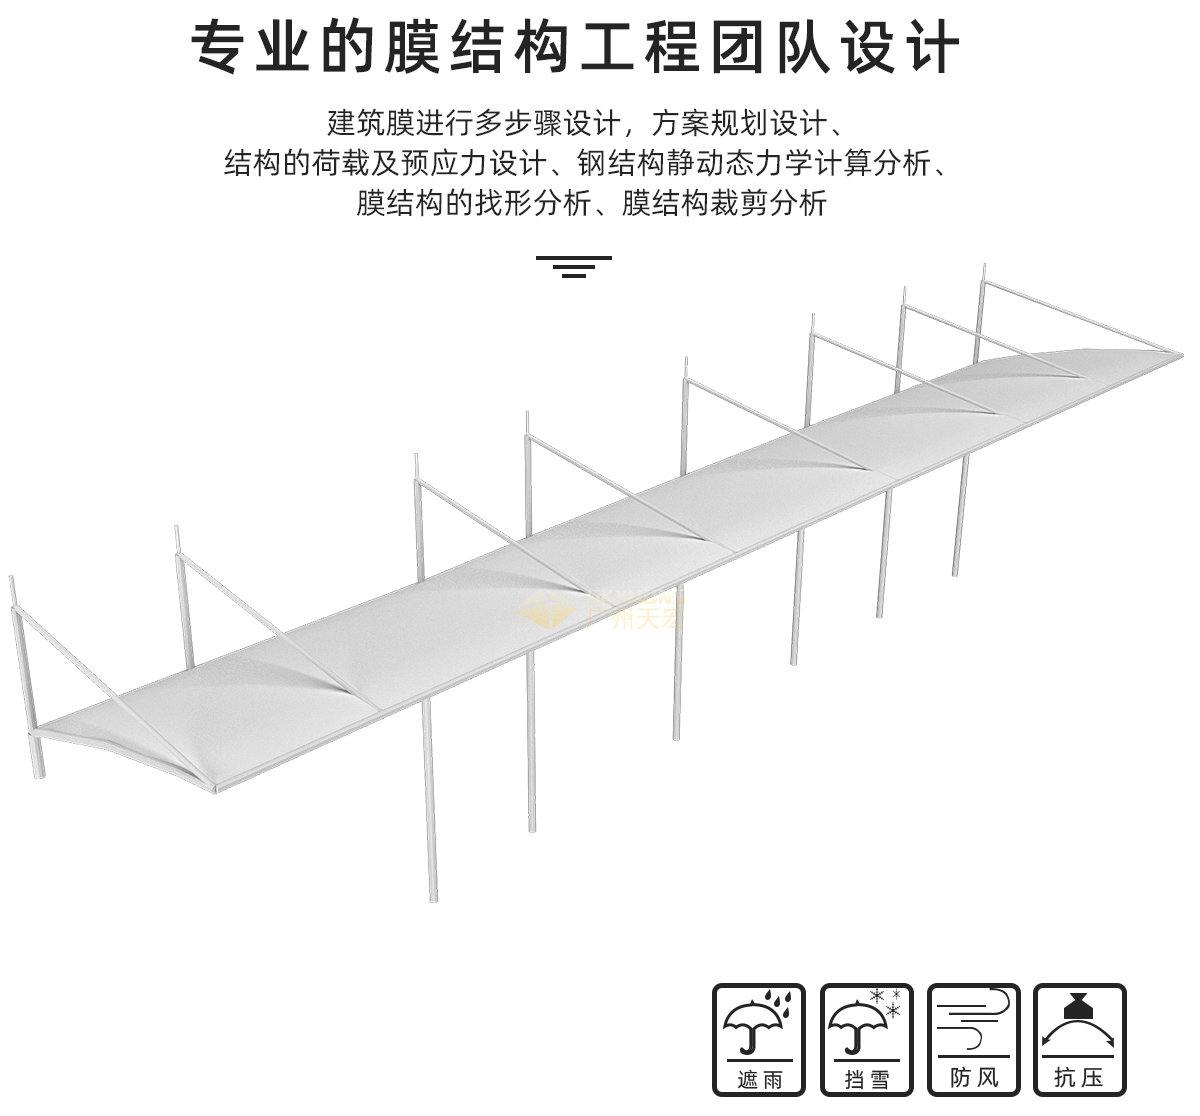 广州天宏膜结构